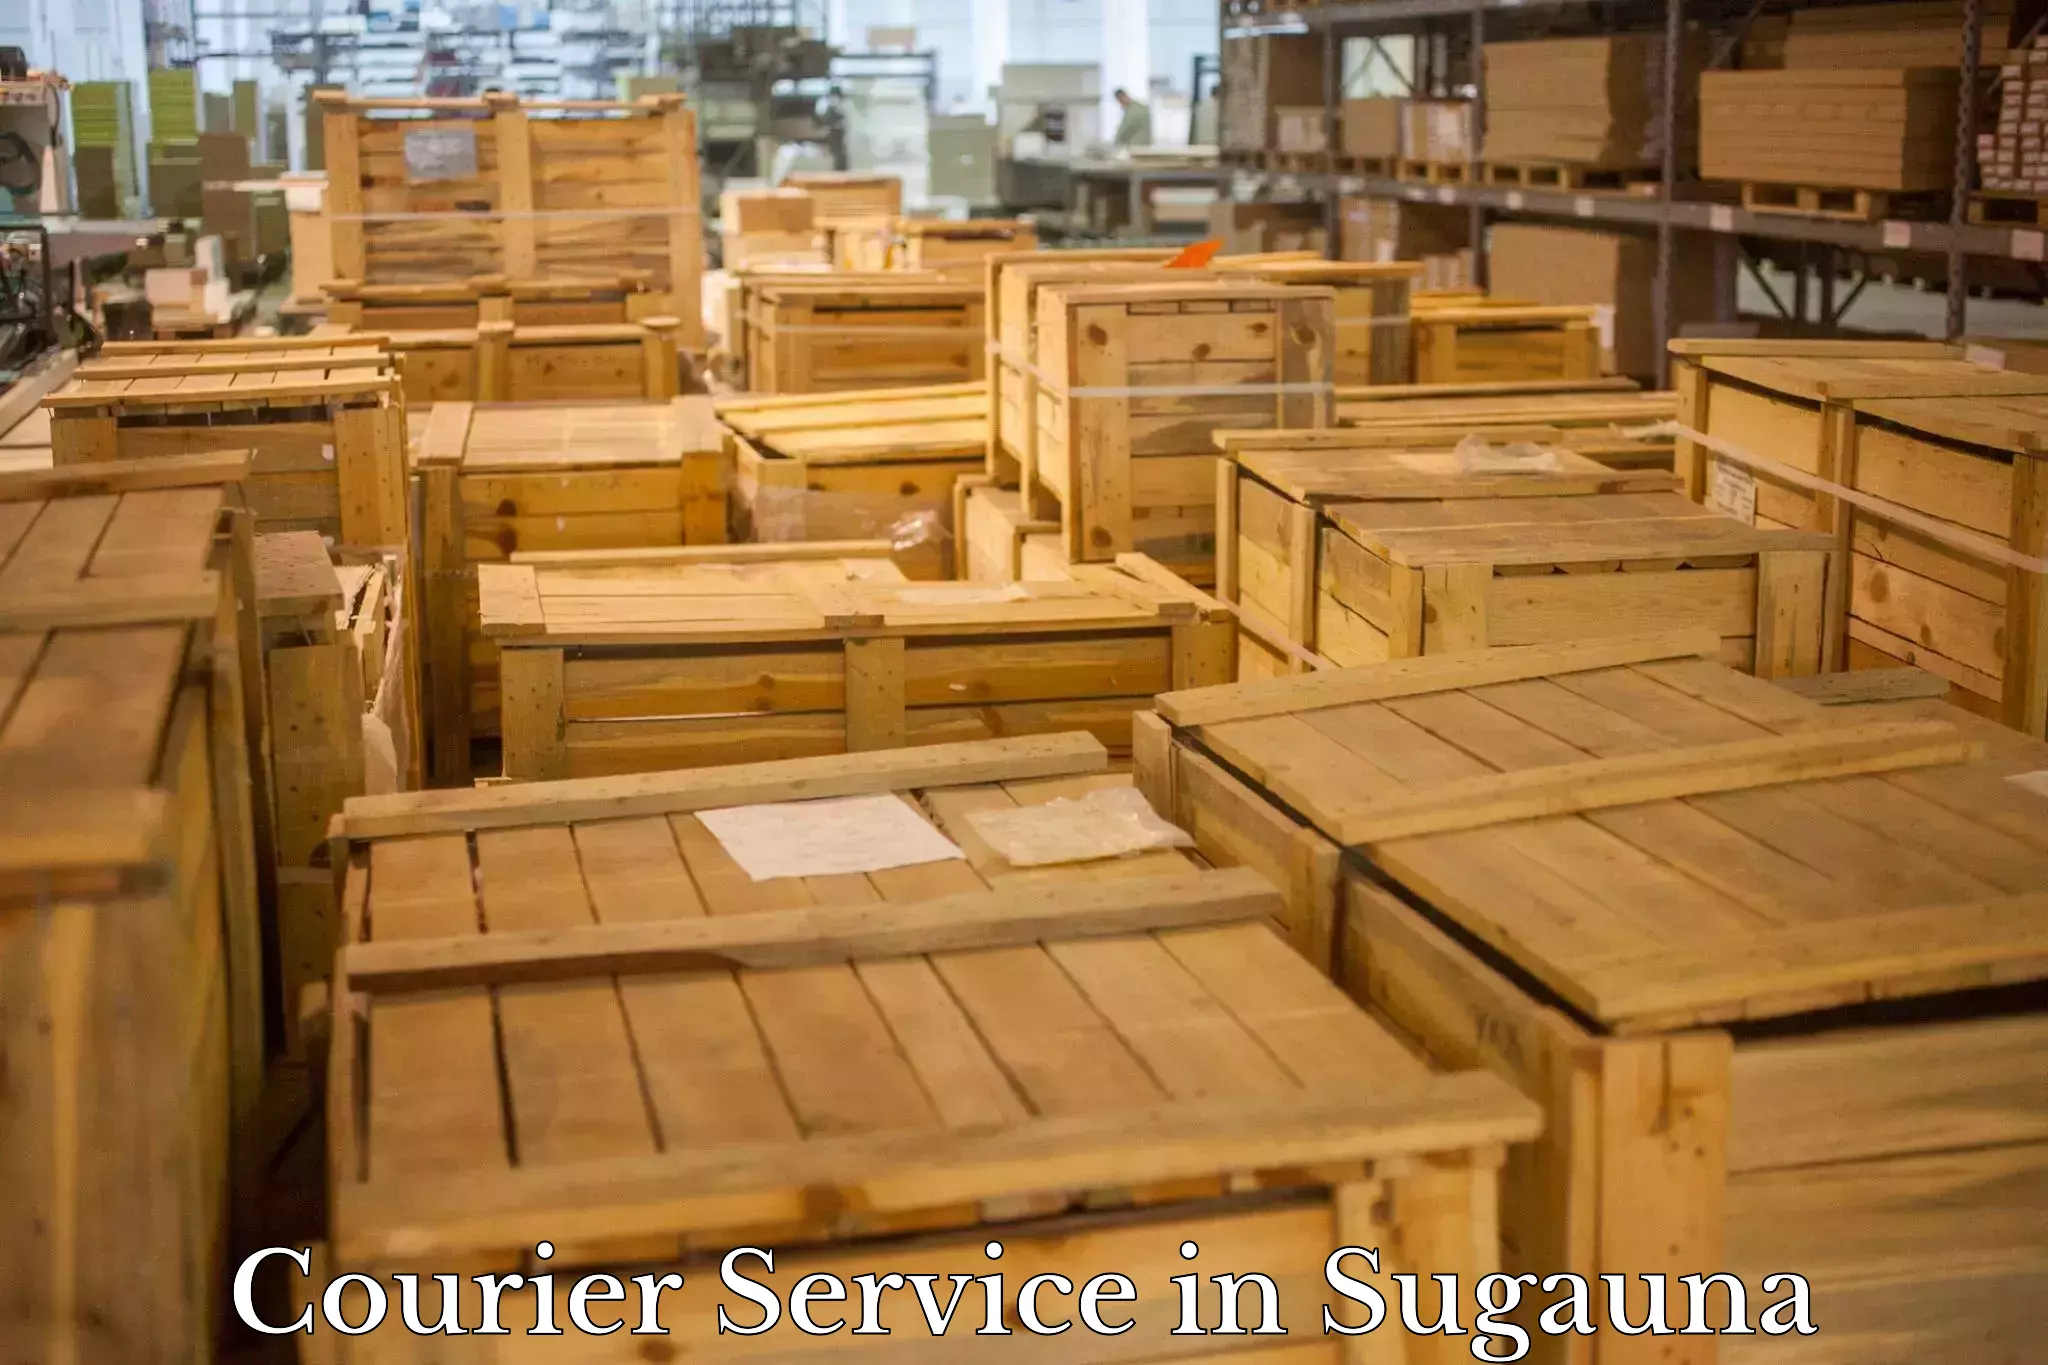 High-speed logistics services in Sugauna